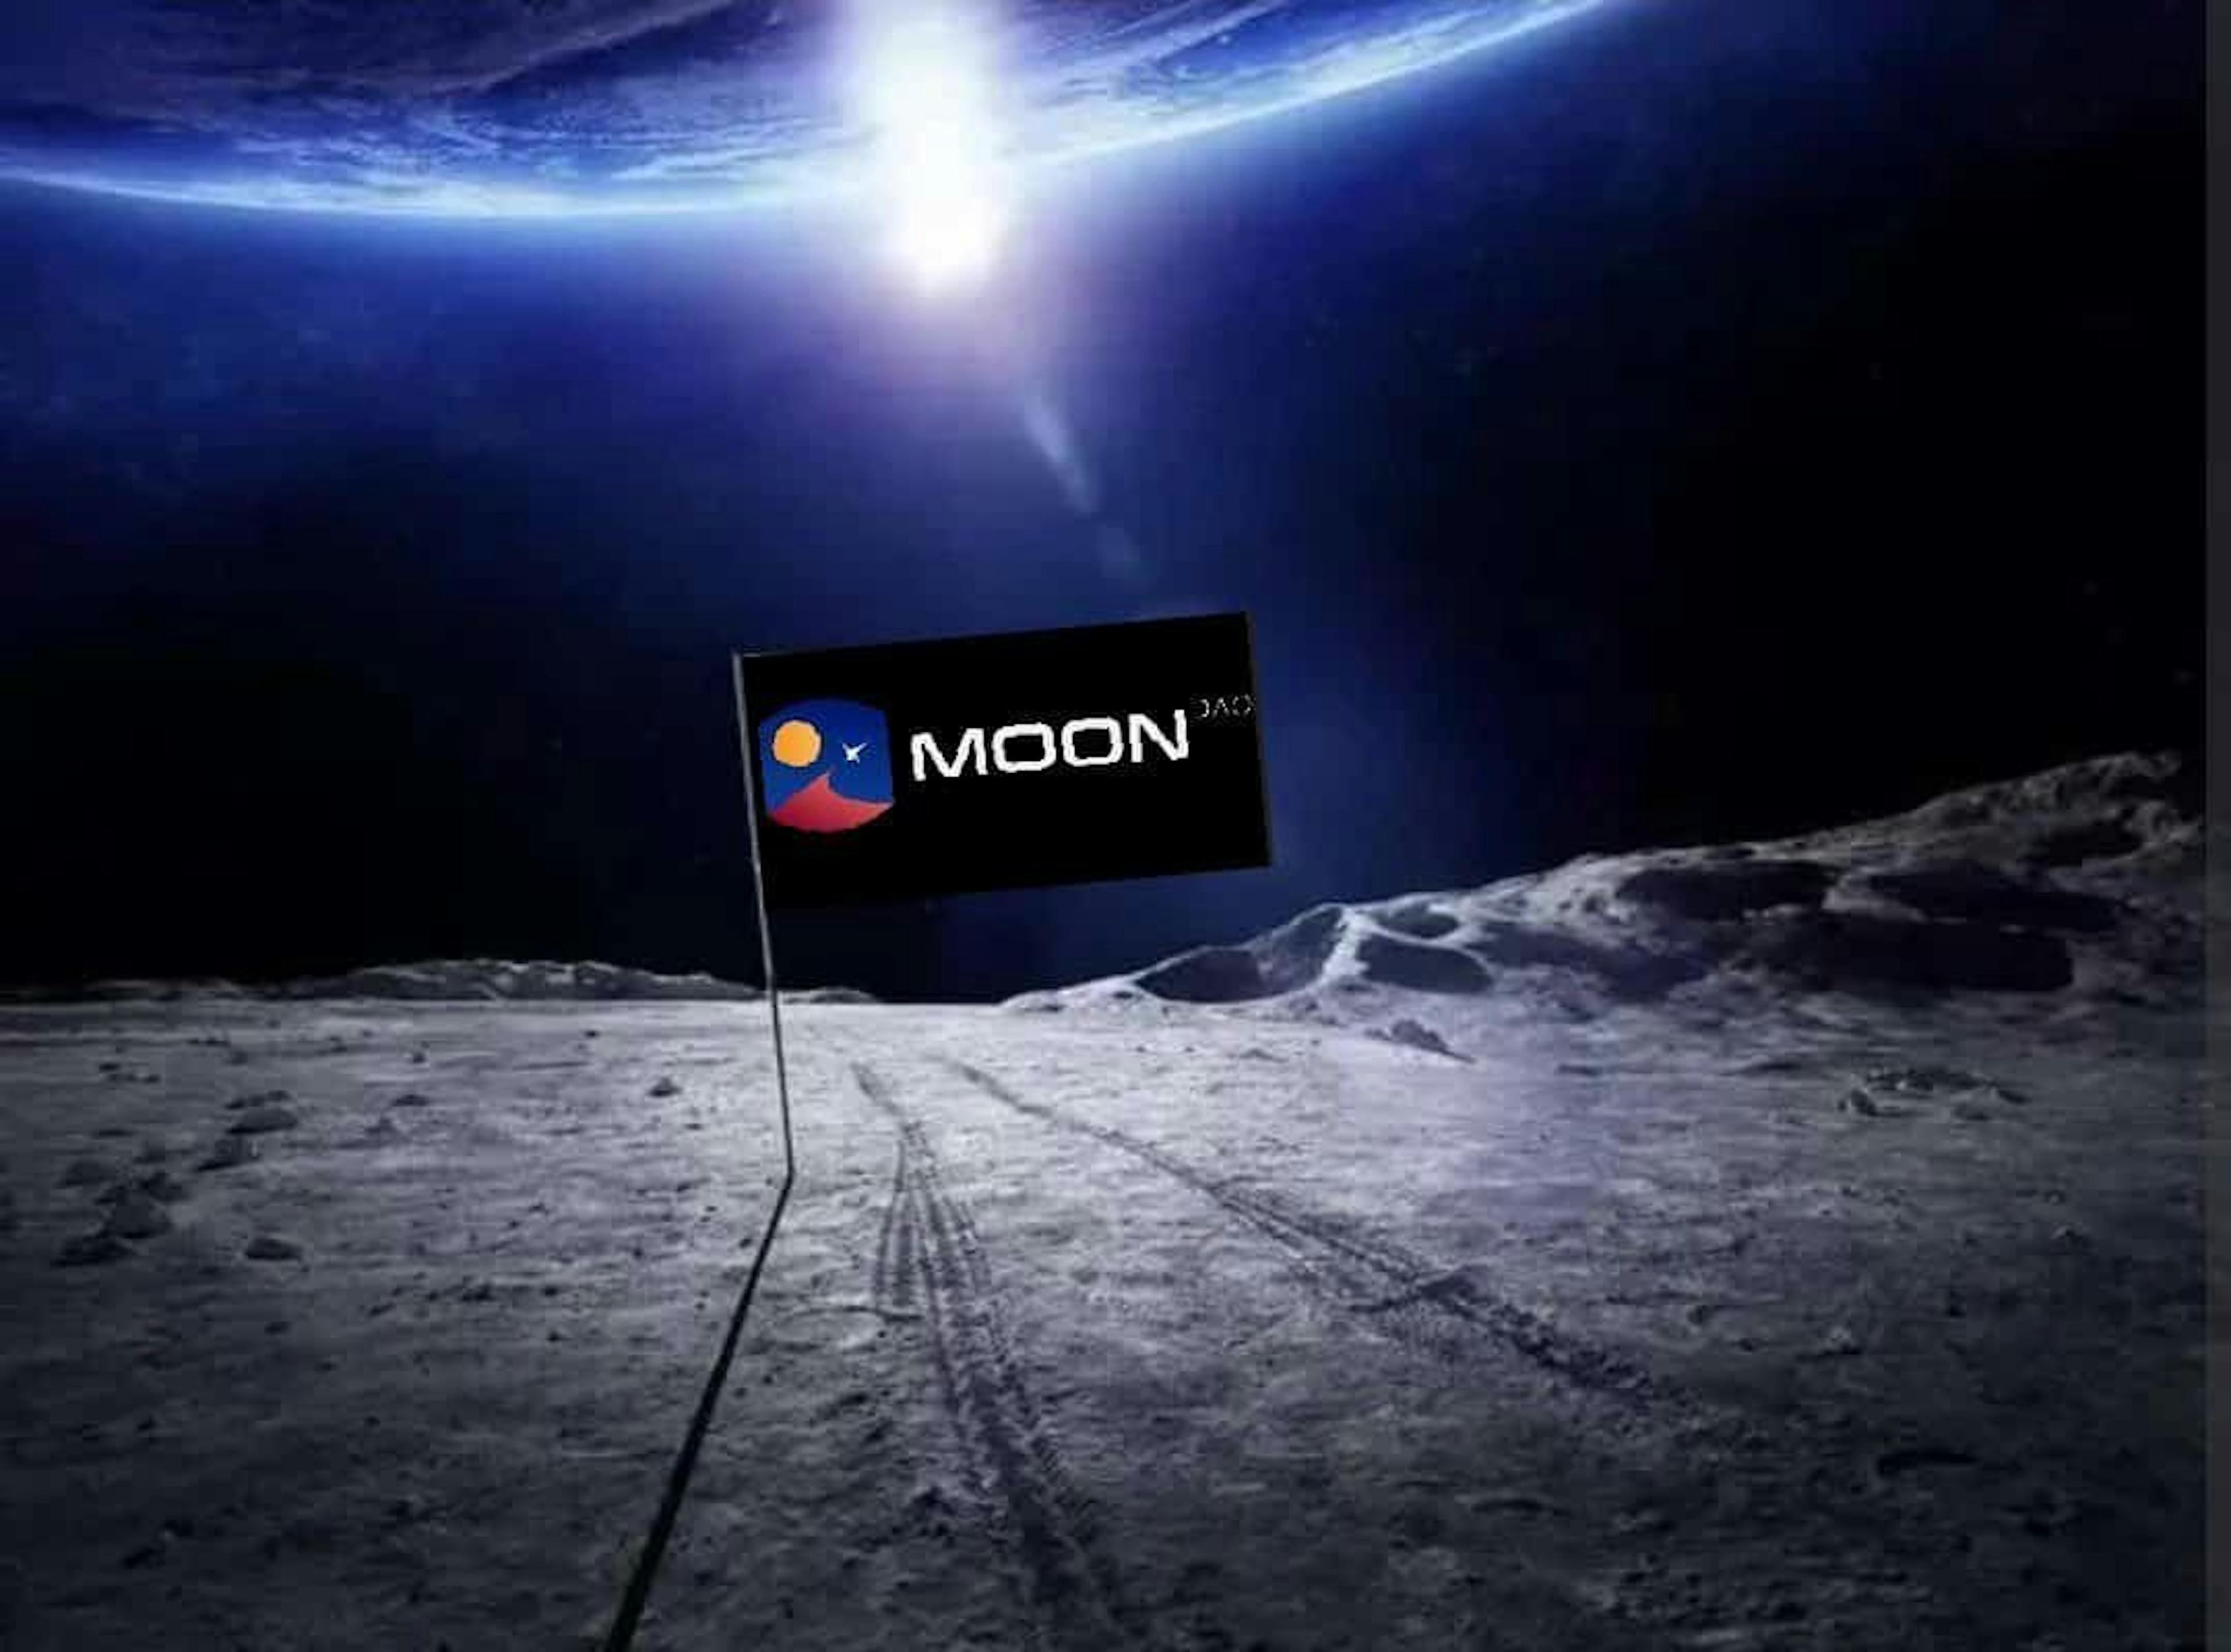 featured image - How MoonDAO Raised $8.3 million on JuiceBox